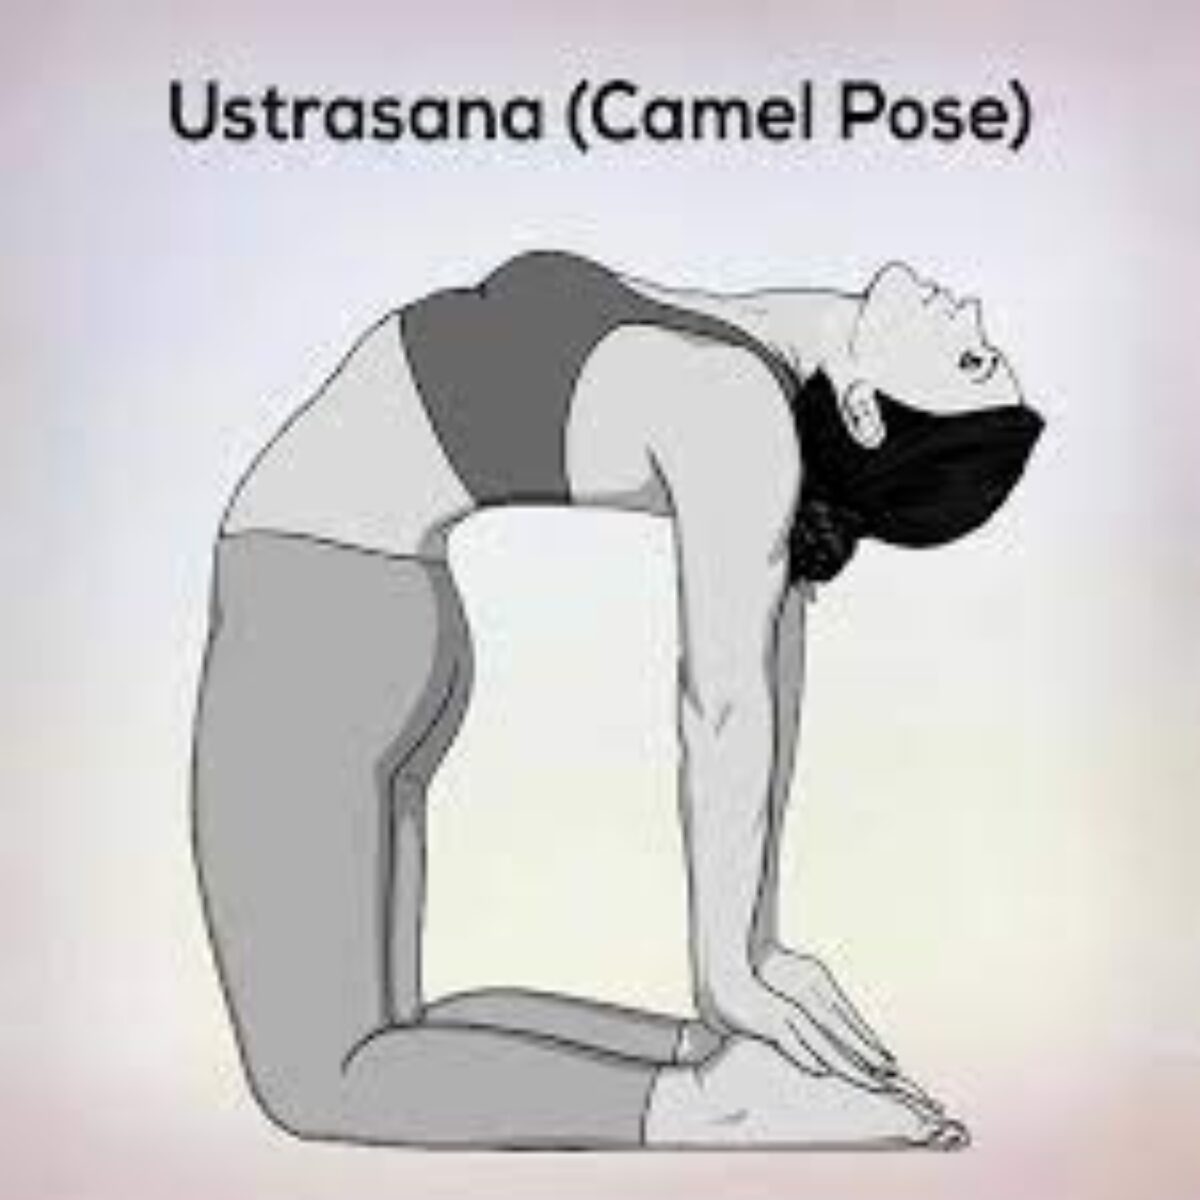 Camel pose variations 🌟 . #yogaonline #yoga #yogapractice #yogateacher  #yogainspiration #onlineyoga #yogalife #hathayoga #yogalove… | Instagram